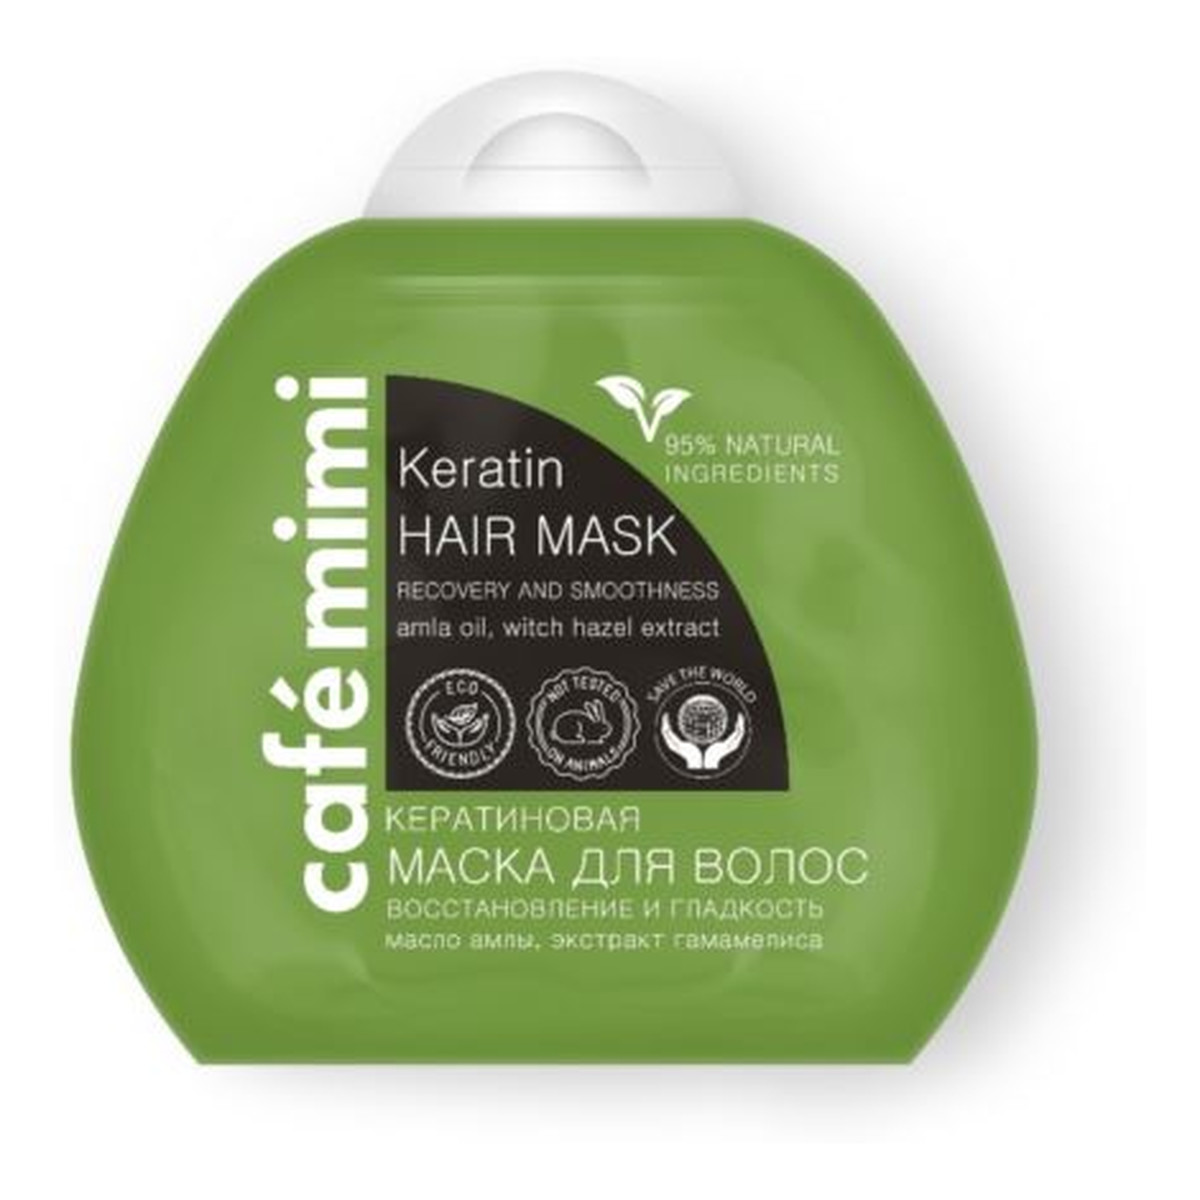 Le Cafe de Beaute Kafe Krasoty Cafe mimi Keratynowa maska do włosów - odbudowa i gładkość - keratyna, olej amli indyjskiej, ekstrakt oczaru wirginijskiego, - 95% składników naturalnych 100ml